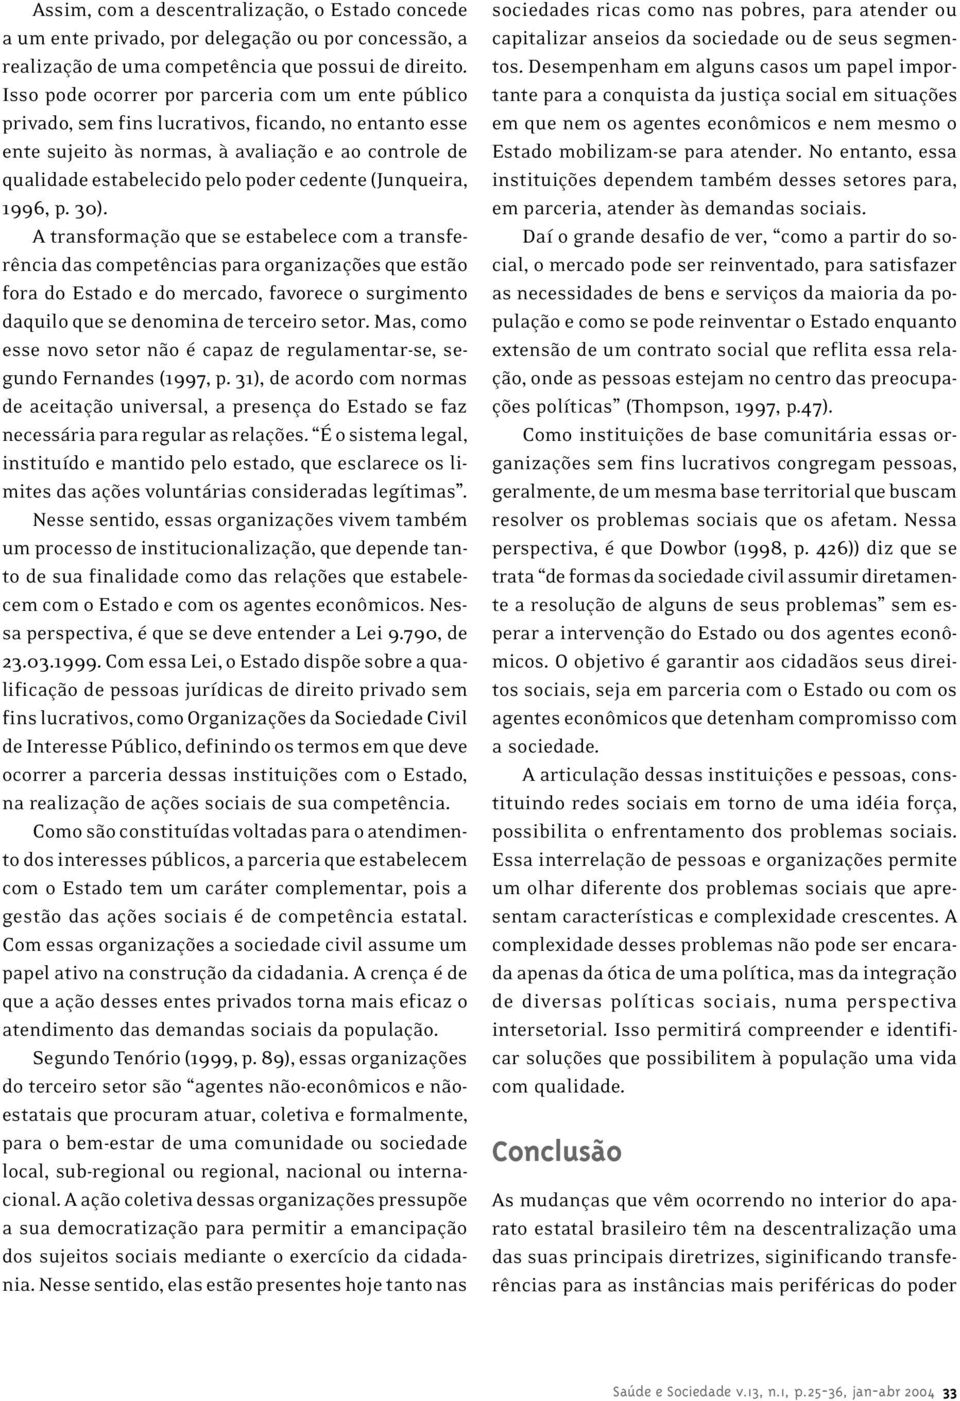 cedente (Junqueira, 1996, p. 30).